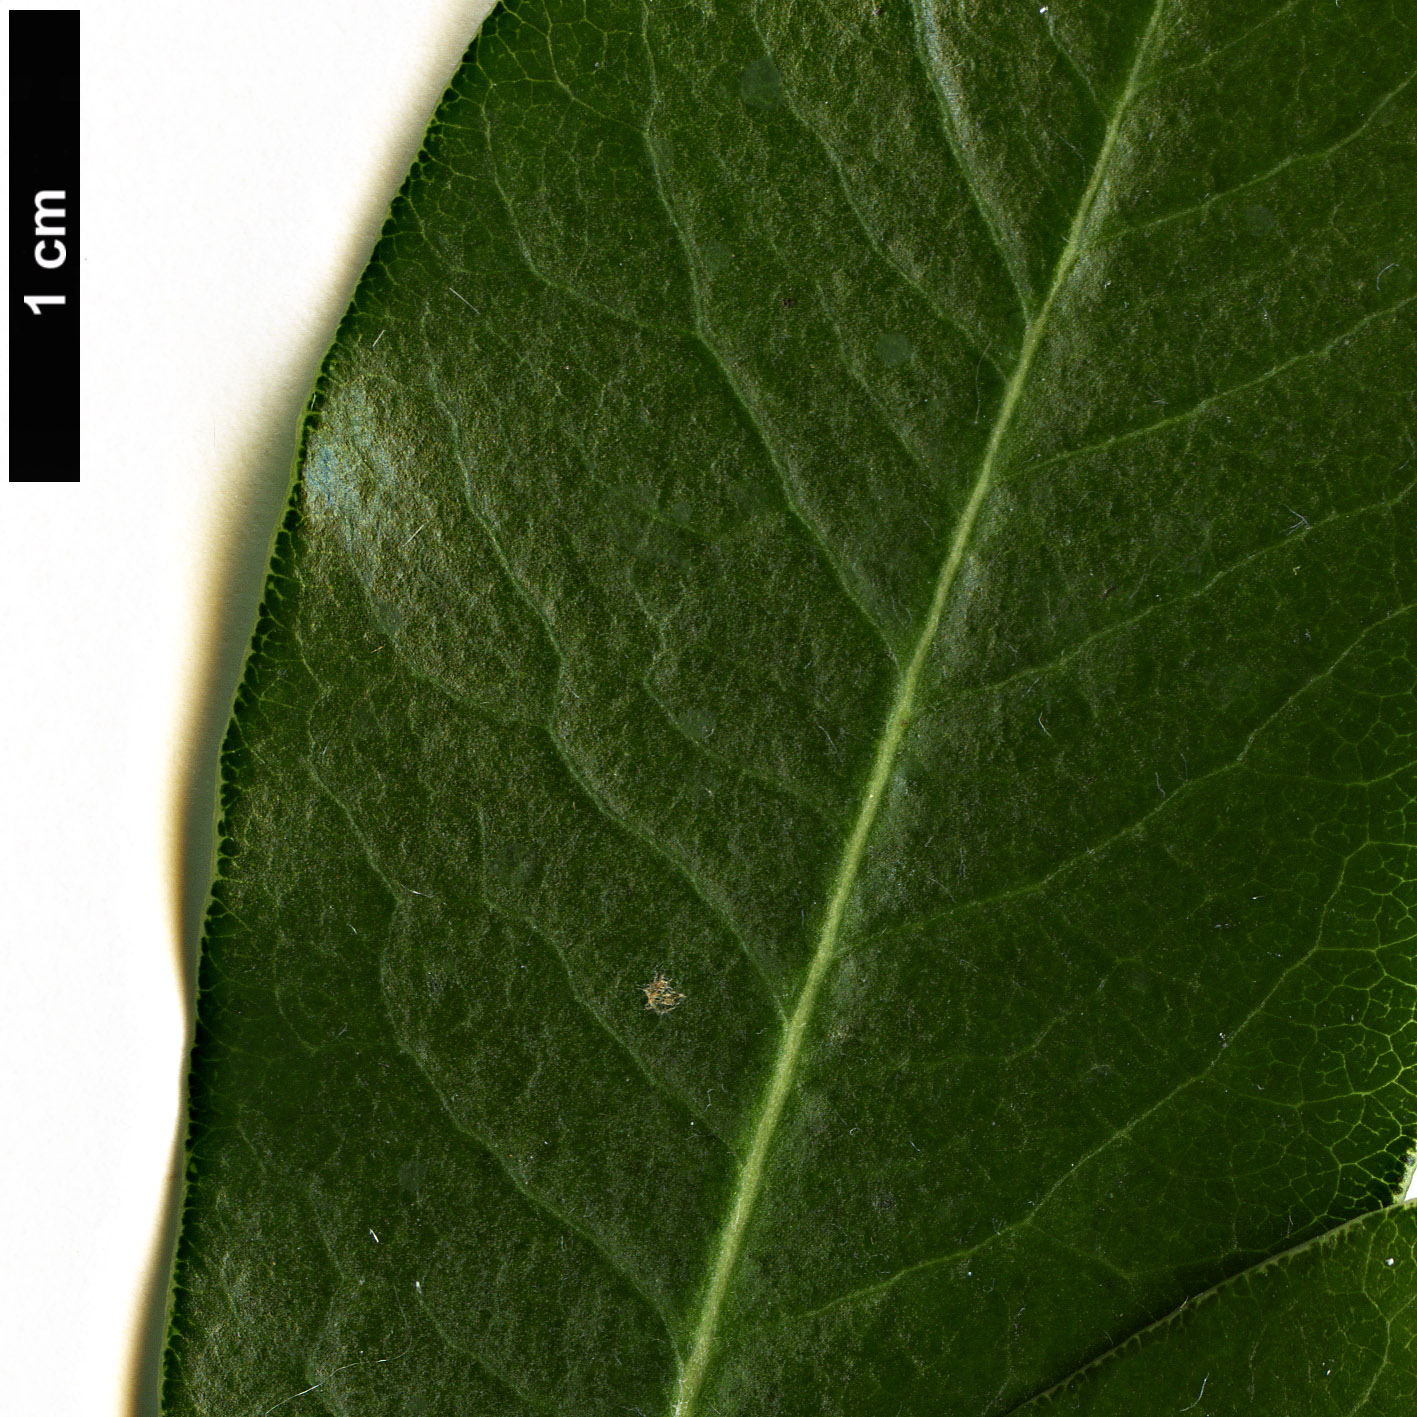 High resolution image: Family: Pittosporaceae - Genus: Pittosporum - Taxon: fasciculatum